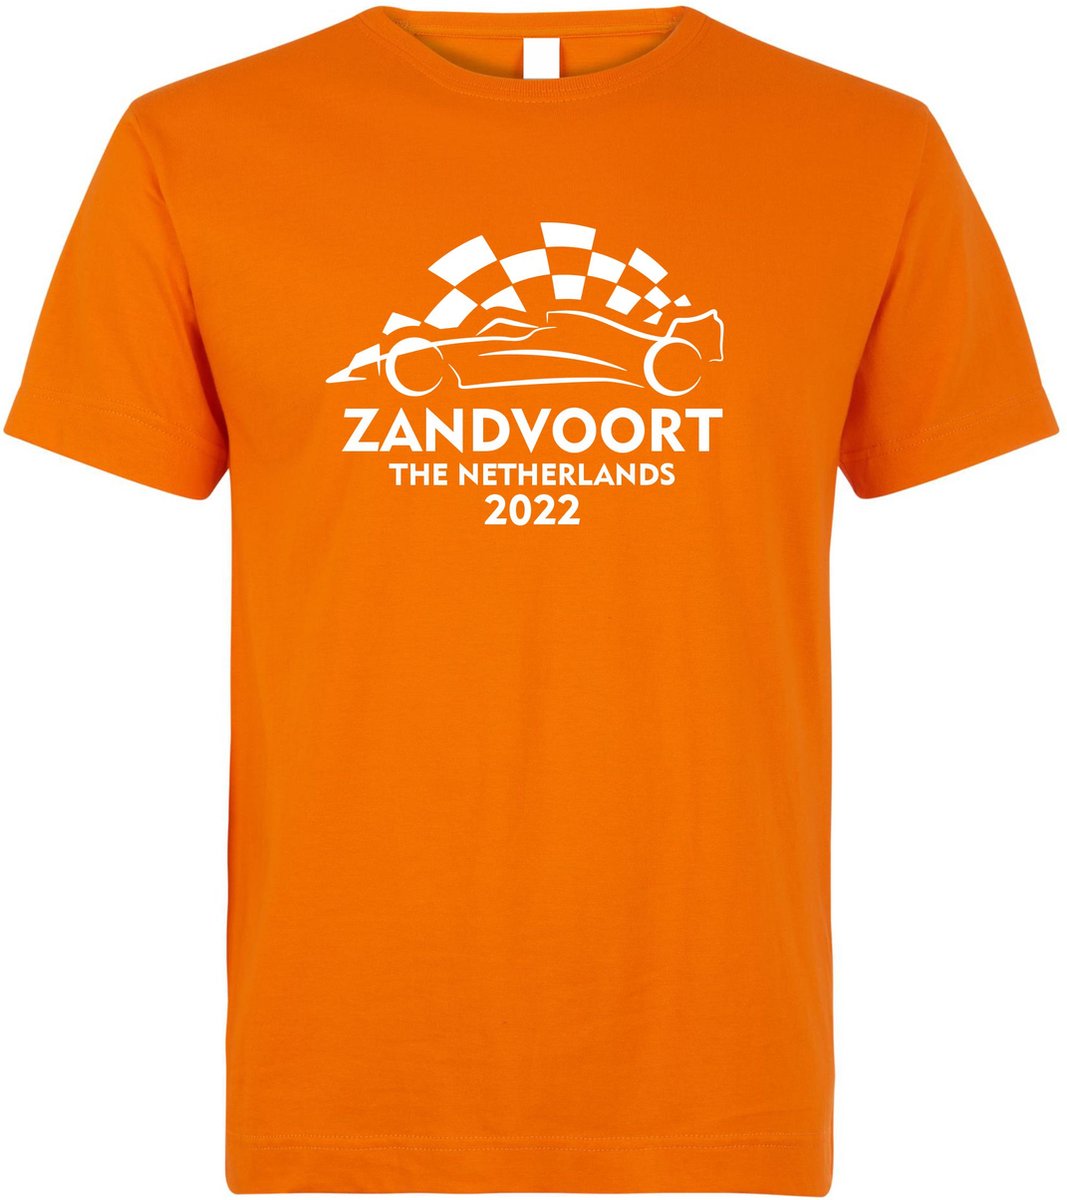 T-shirt kinderen Zandvoort 2022 met raceauto | Max Verstappen / Red Bull Racing / Formule 1 fan | Grand Prix Circuit Zandvoort | kleding shirt | Oranje | maat 104